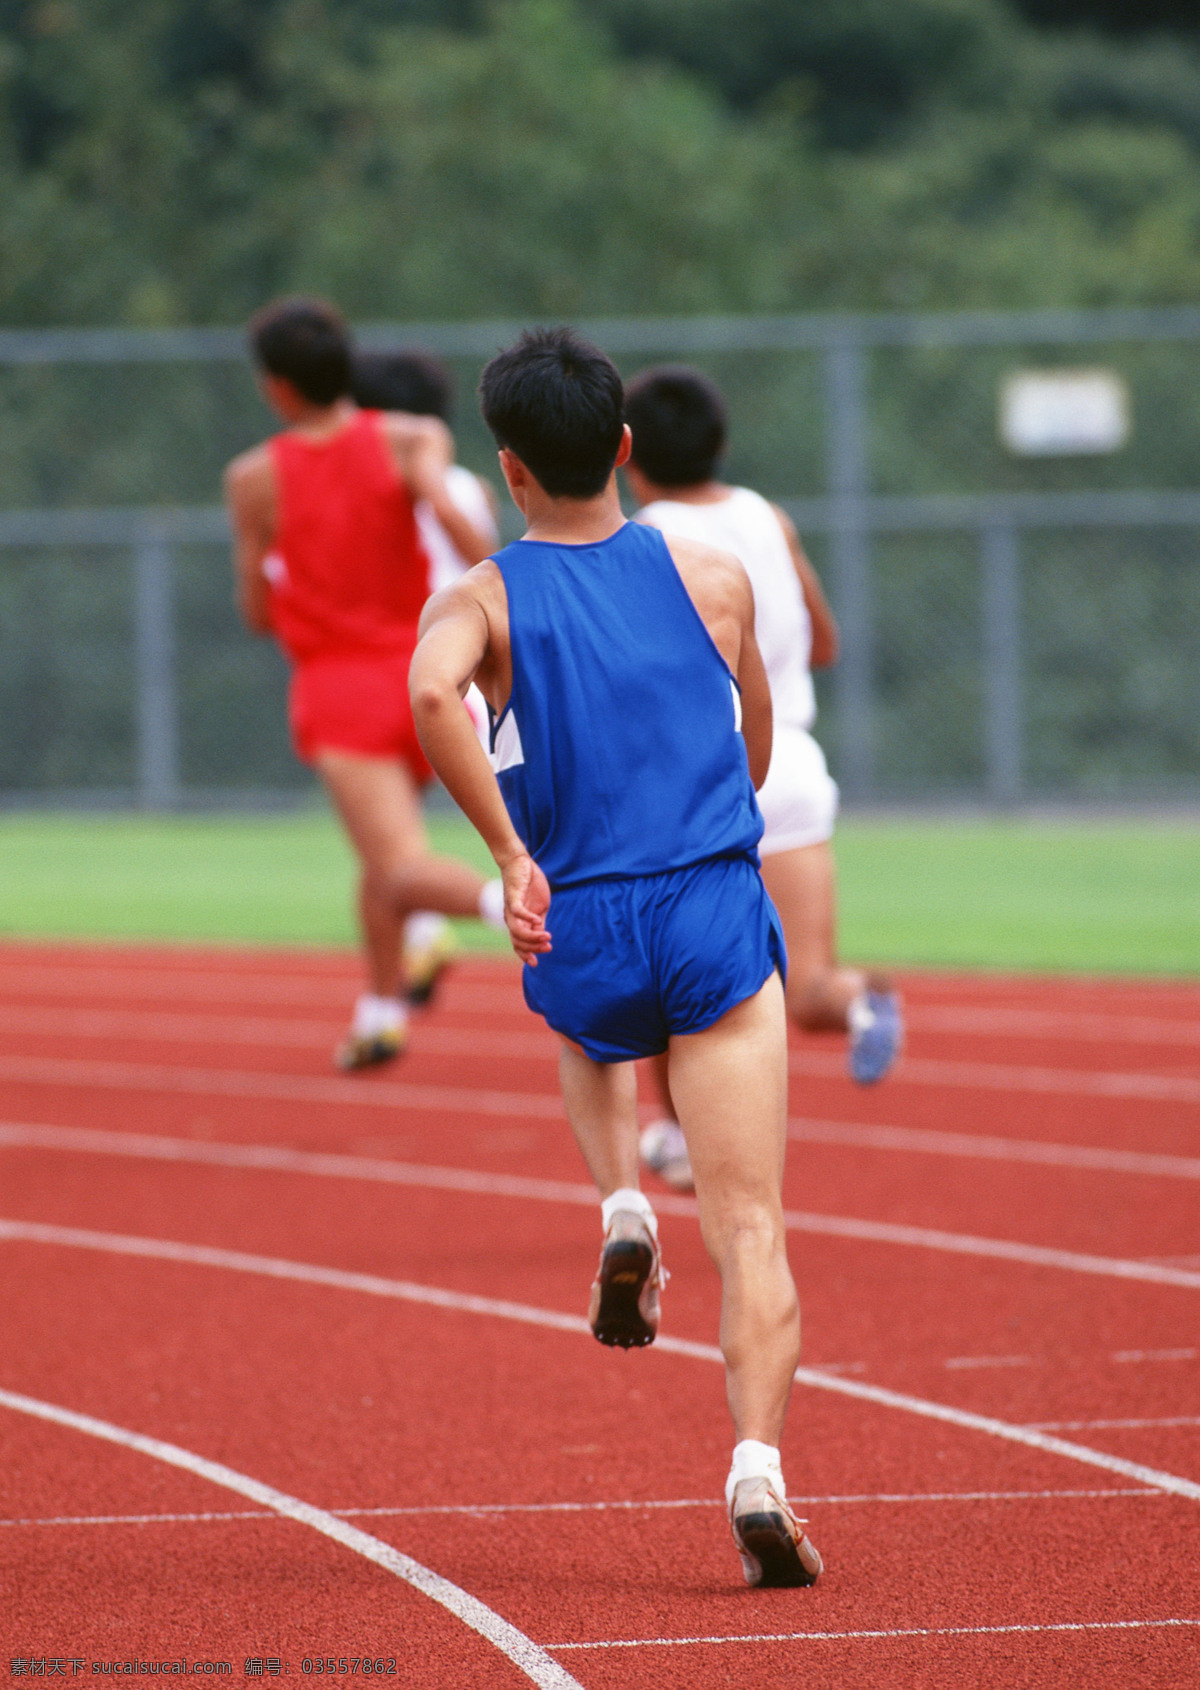 体育运动 赛跑竞技运动 生活百科 生活素材 摄影图库